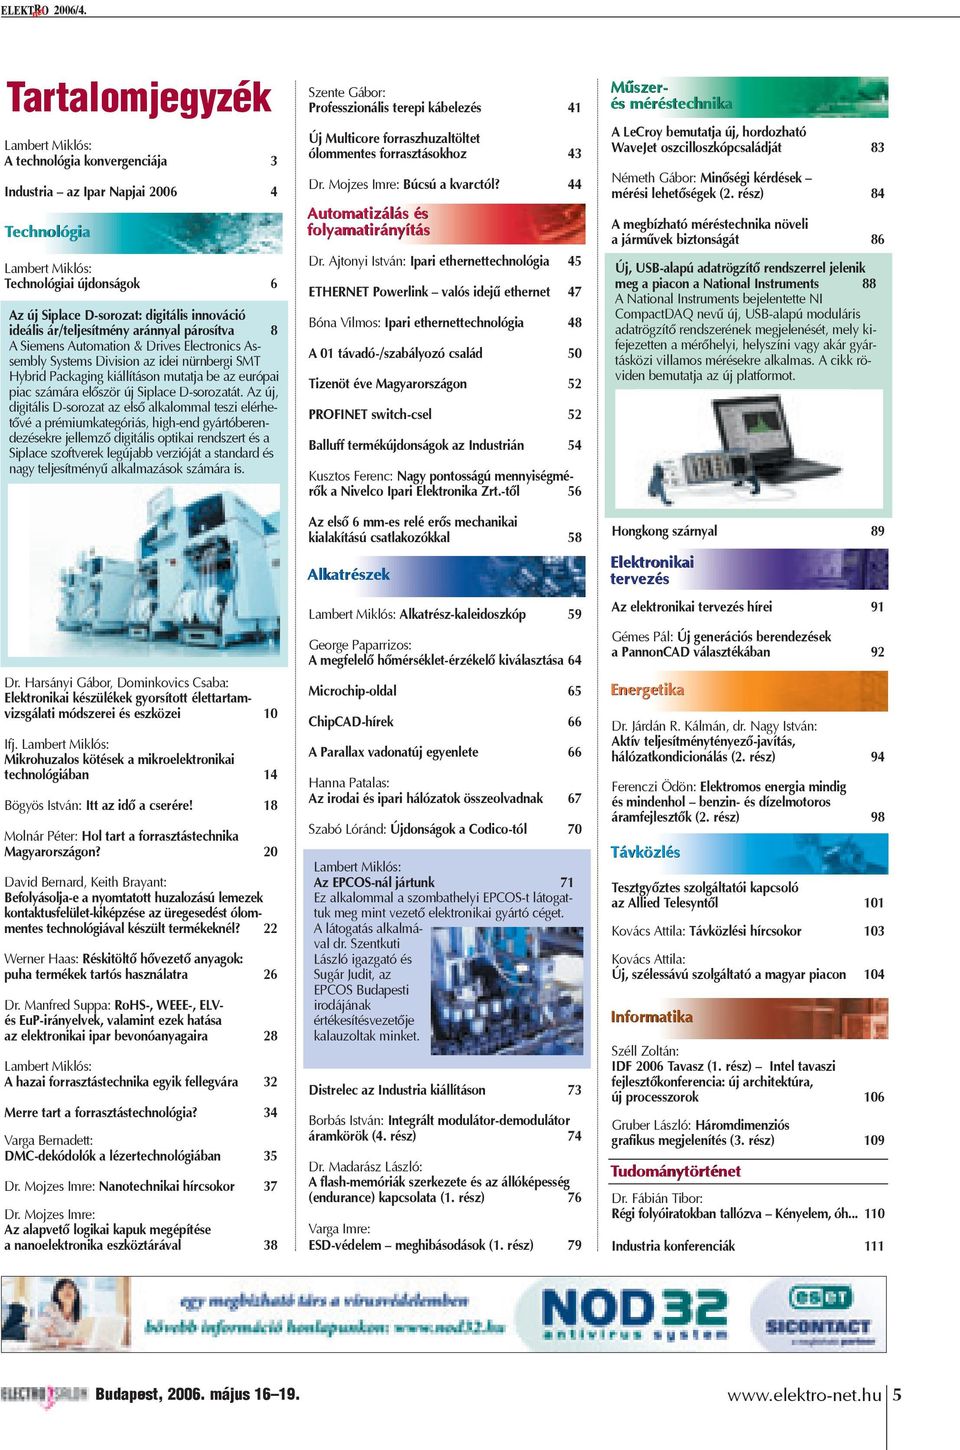 ideális ár/teljesítmény aránnyal párosítva 8 A Siemens Automation & Drives Electronics Assembly Systems Division az idei nürnbergi SMT Hybrid Packaging kiállításon mutatja be az európai piac számára